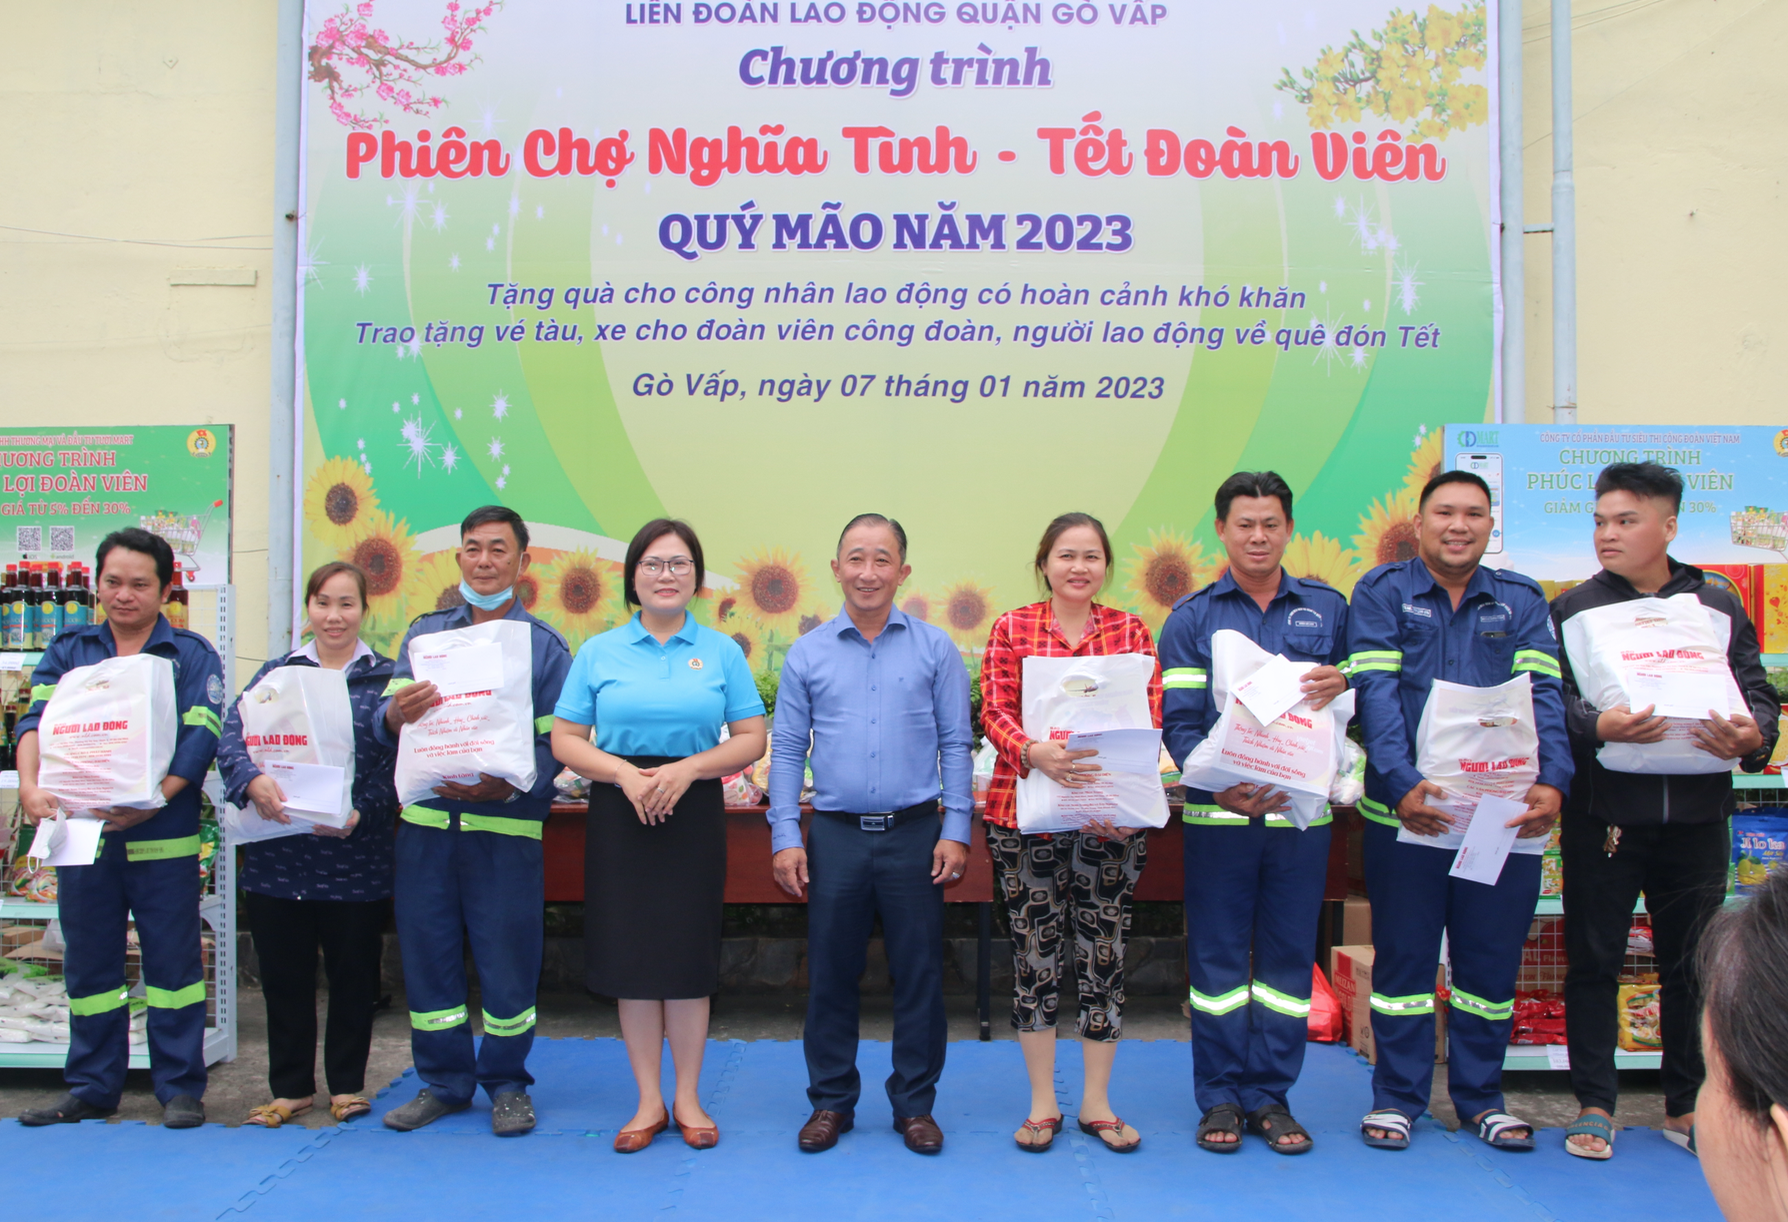 100 phần quà Tết đến với công nhân khó khăn tại quận Gò Vấp, TP HCM - Ảnh 1.